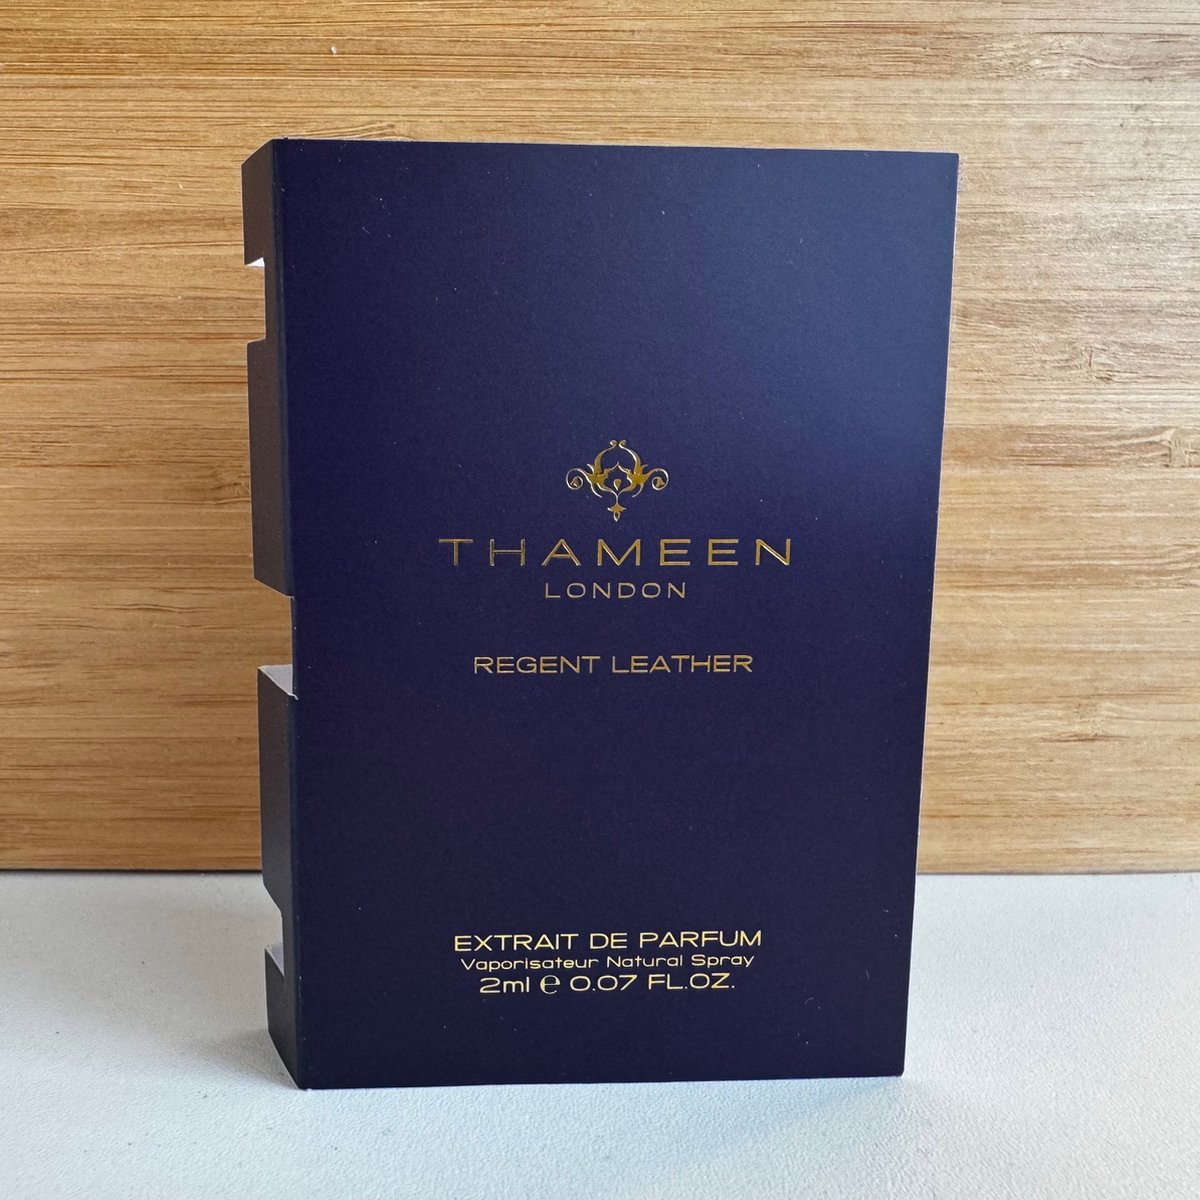 Thameen - Regent Leather - 2ml Original Sample